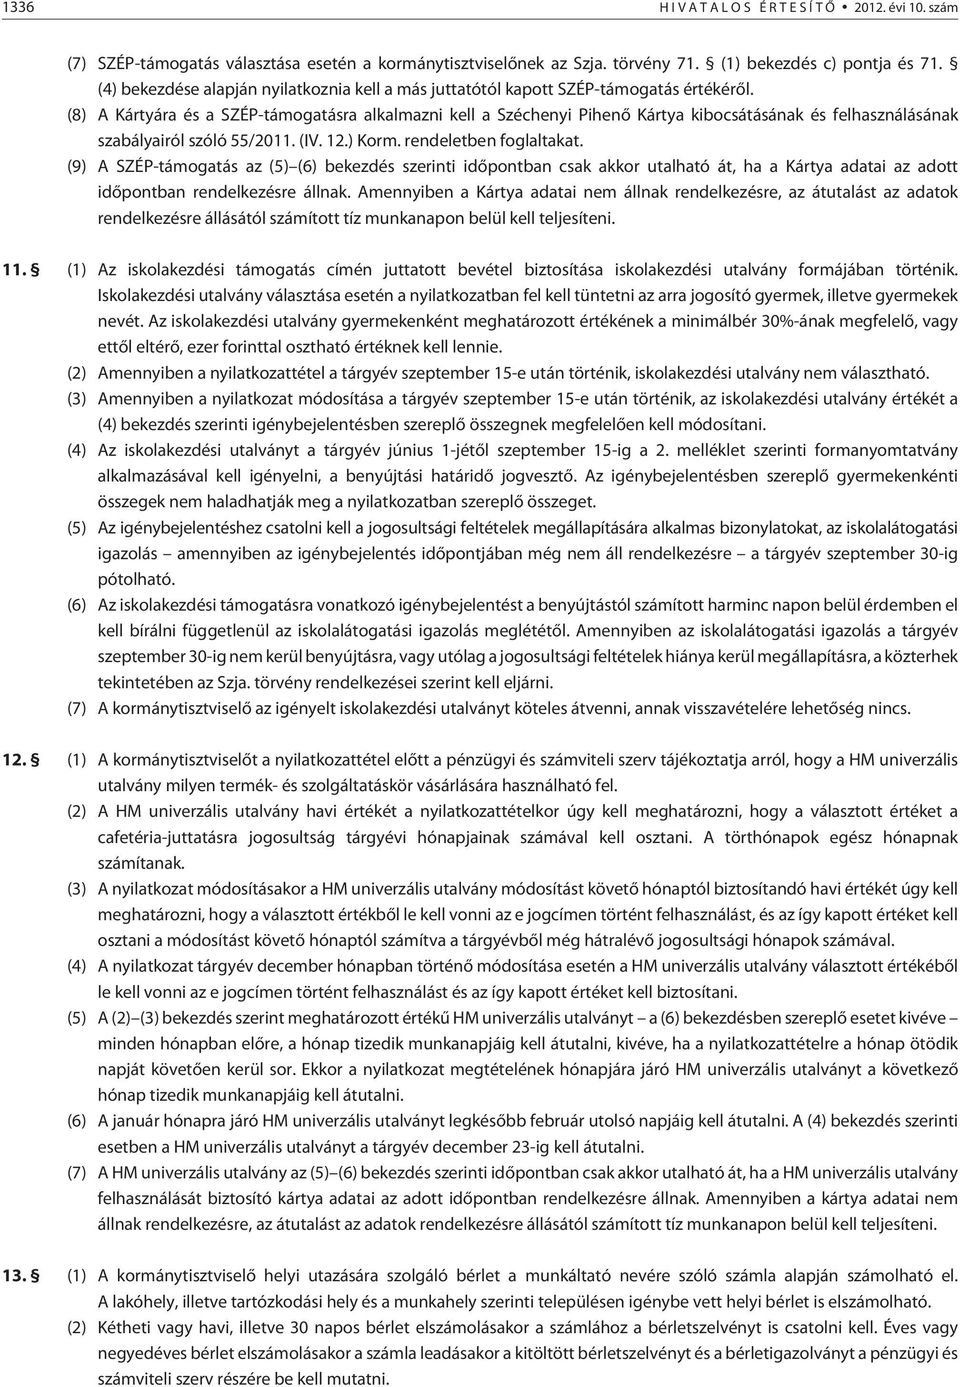 (8) A Kártyára és a SZÉP-támogatásra alkalmazni kell a Széchenyi Pihenõ Kártya kibocsátásának és felhasználásának szabályairól szóló 55/2011. (IV. 12.) Korm. rendeletben foglaltakat.